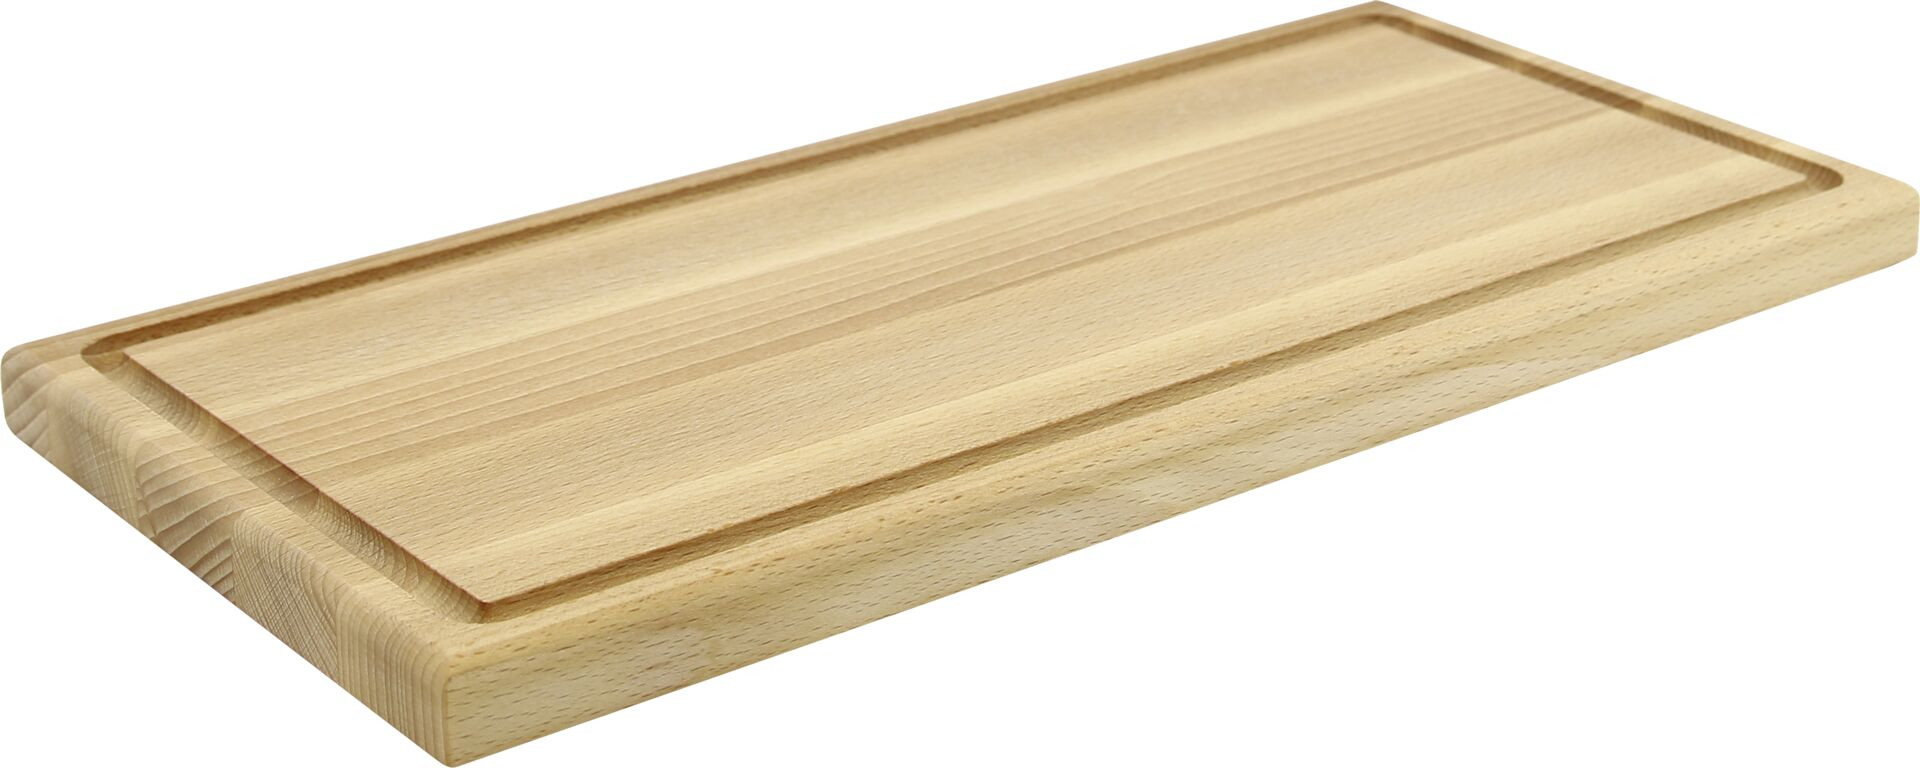 Buffetsystem "Wood" GN 1/3  Platte geschlossen 40,5x19x2cm mit Saftrille